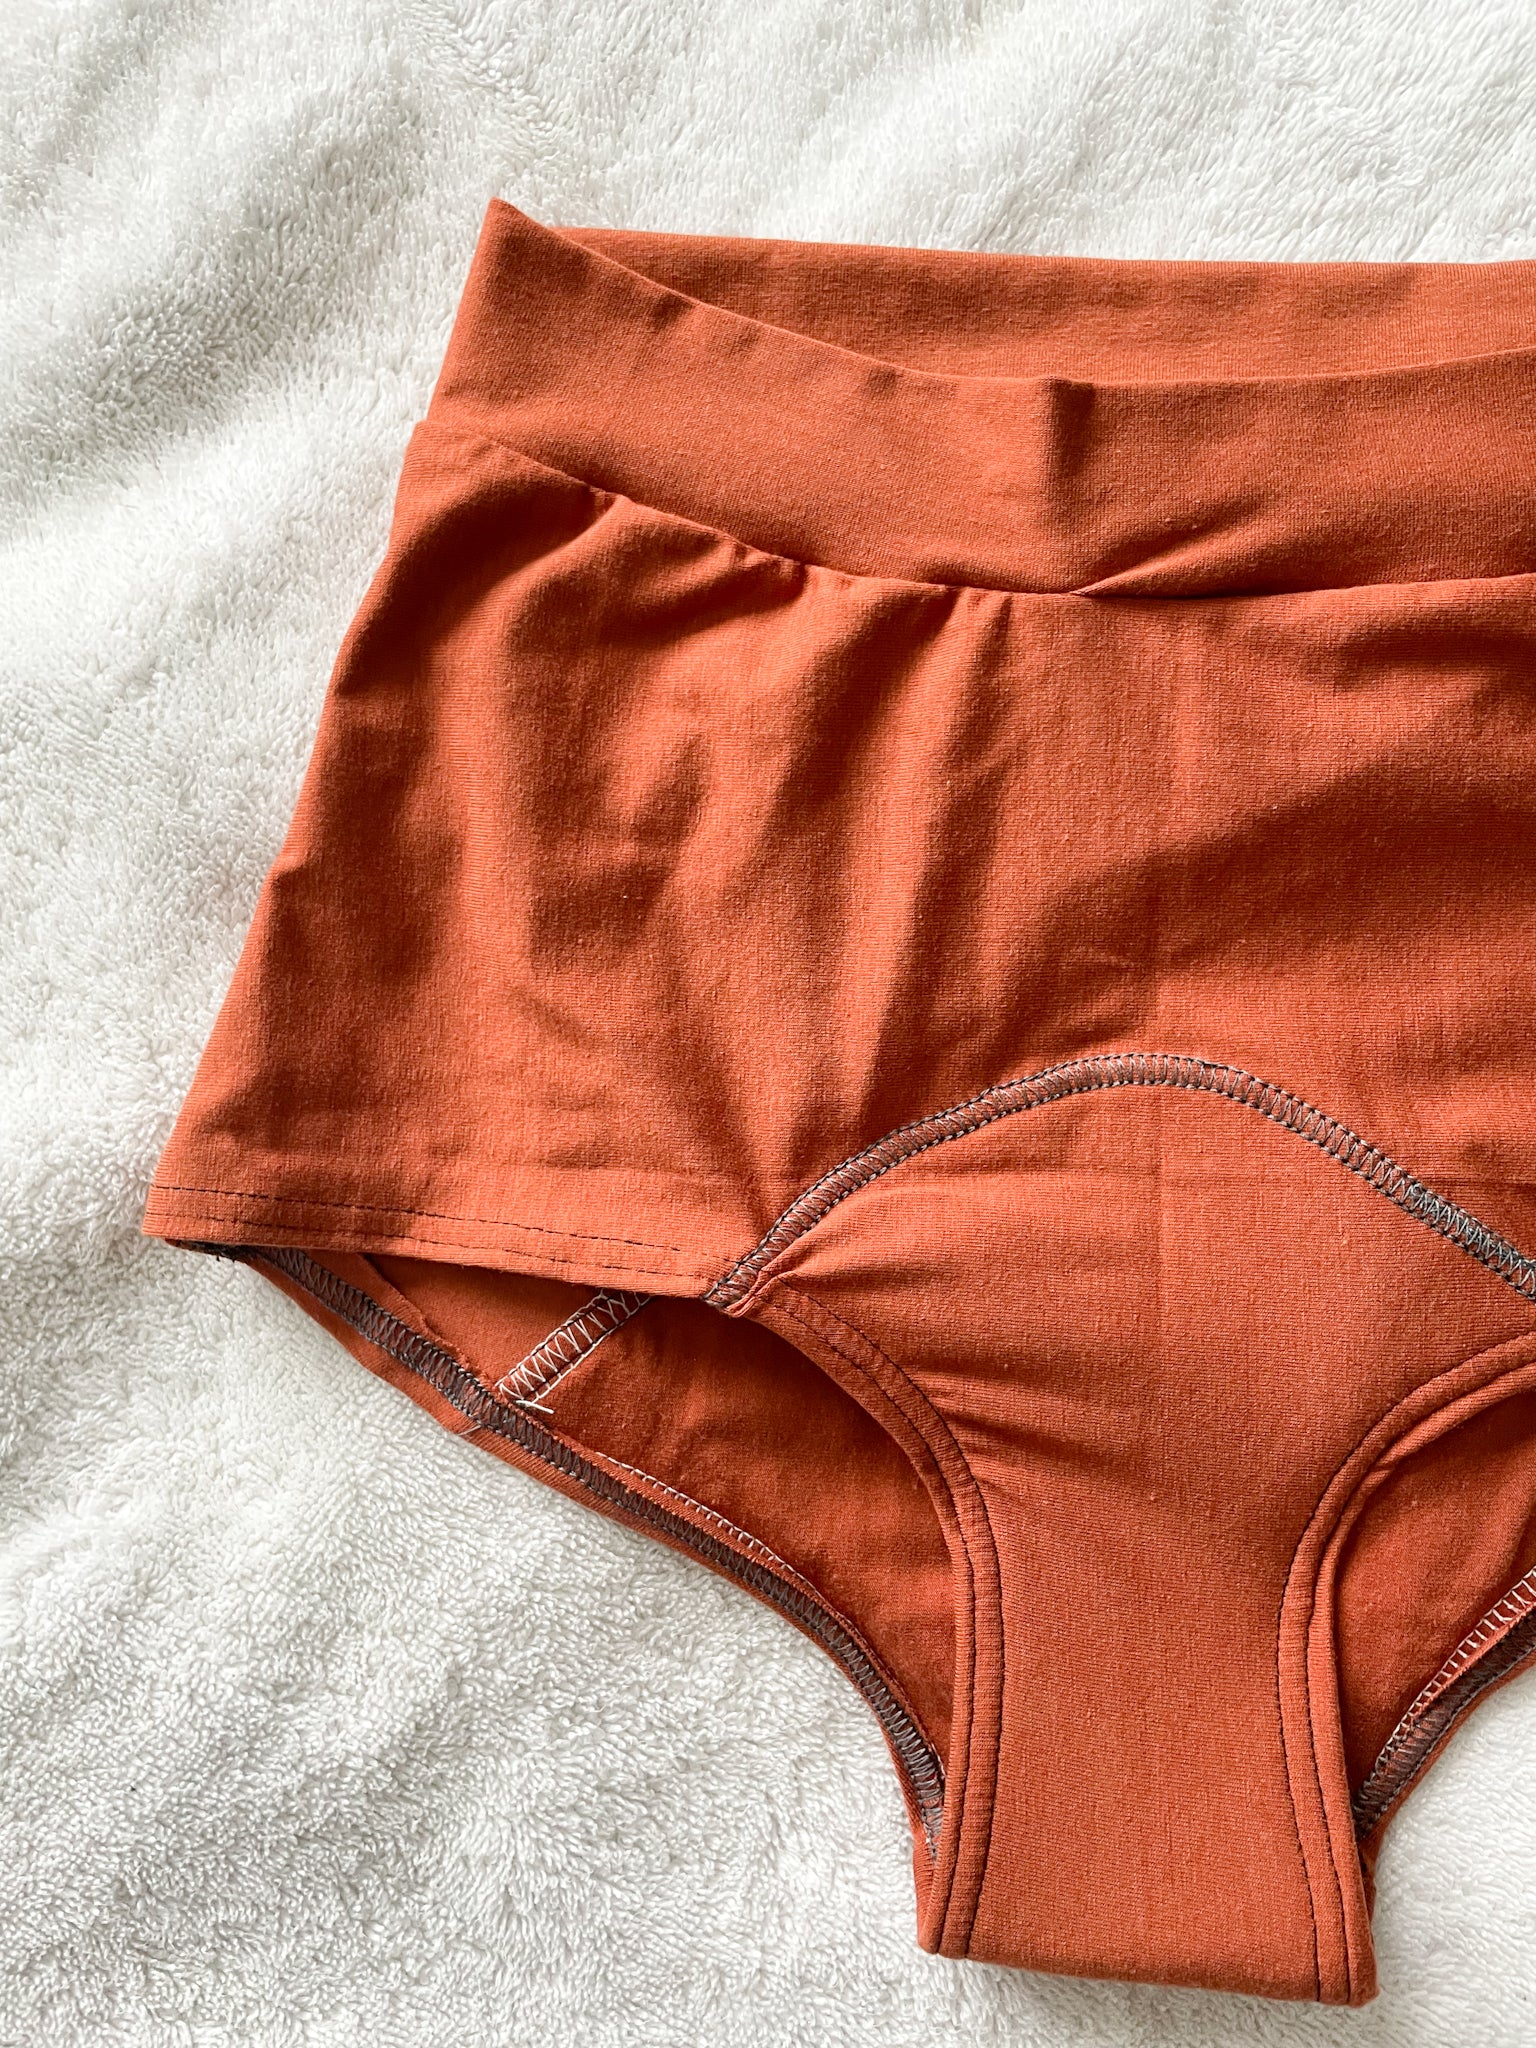 High Waisted Period Underwear - Orange — Crushes